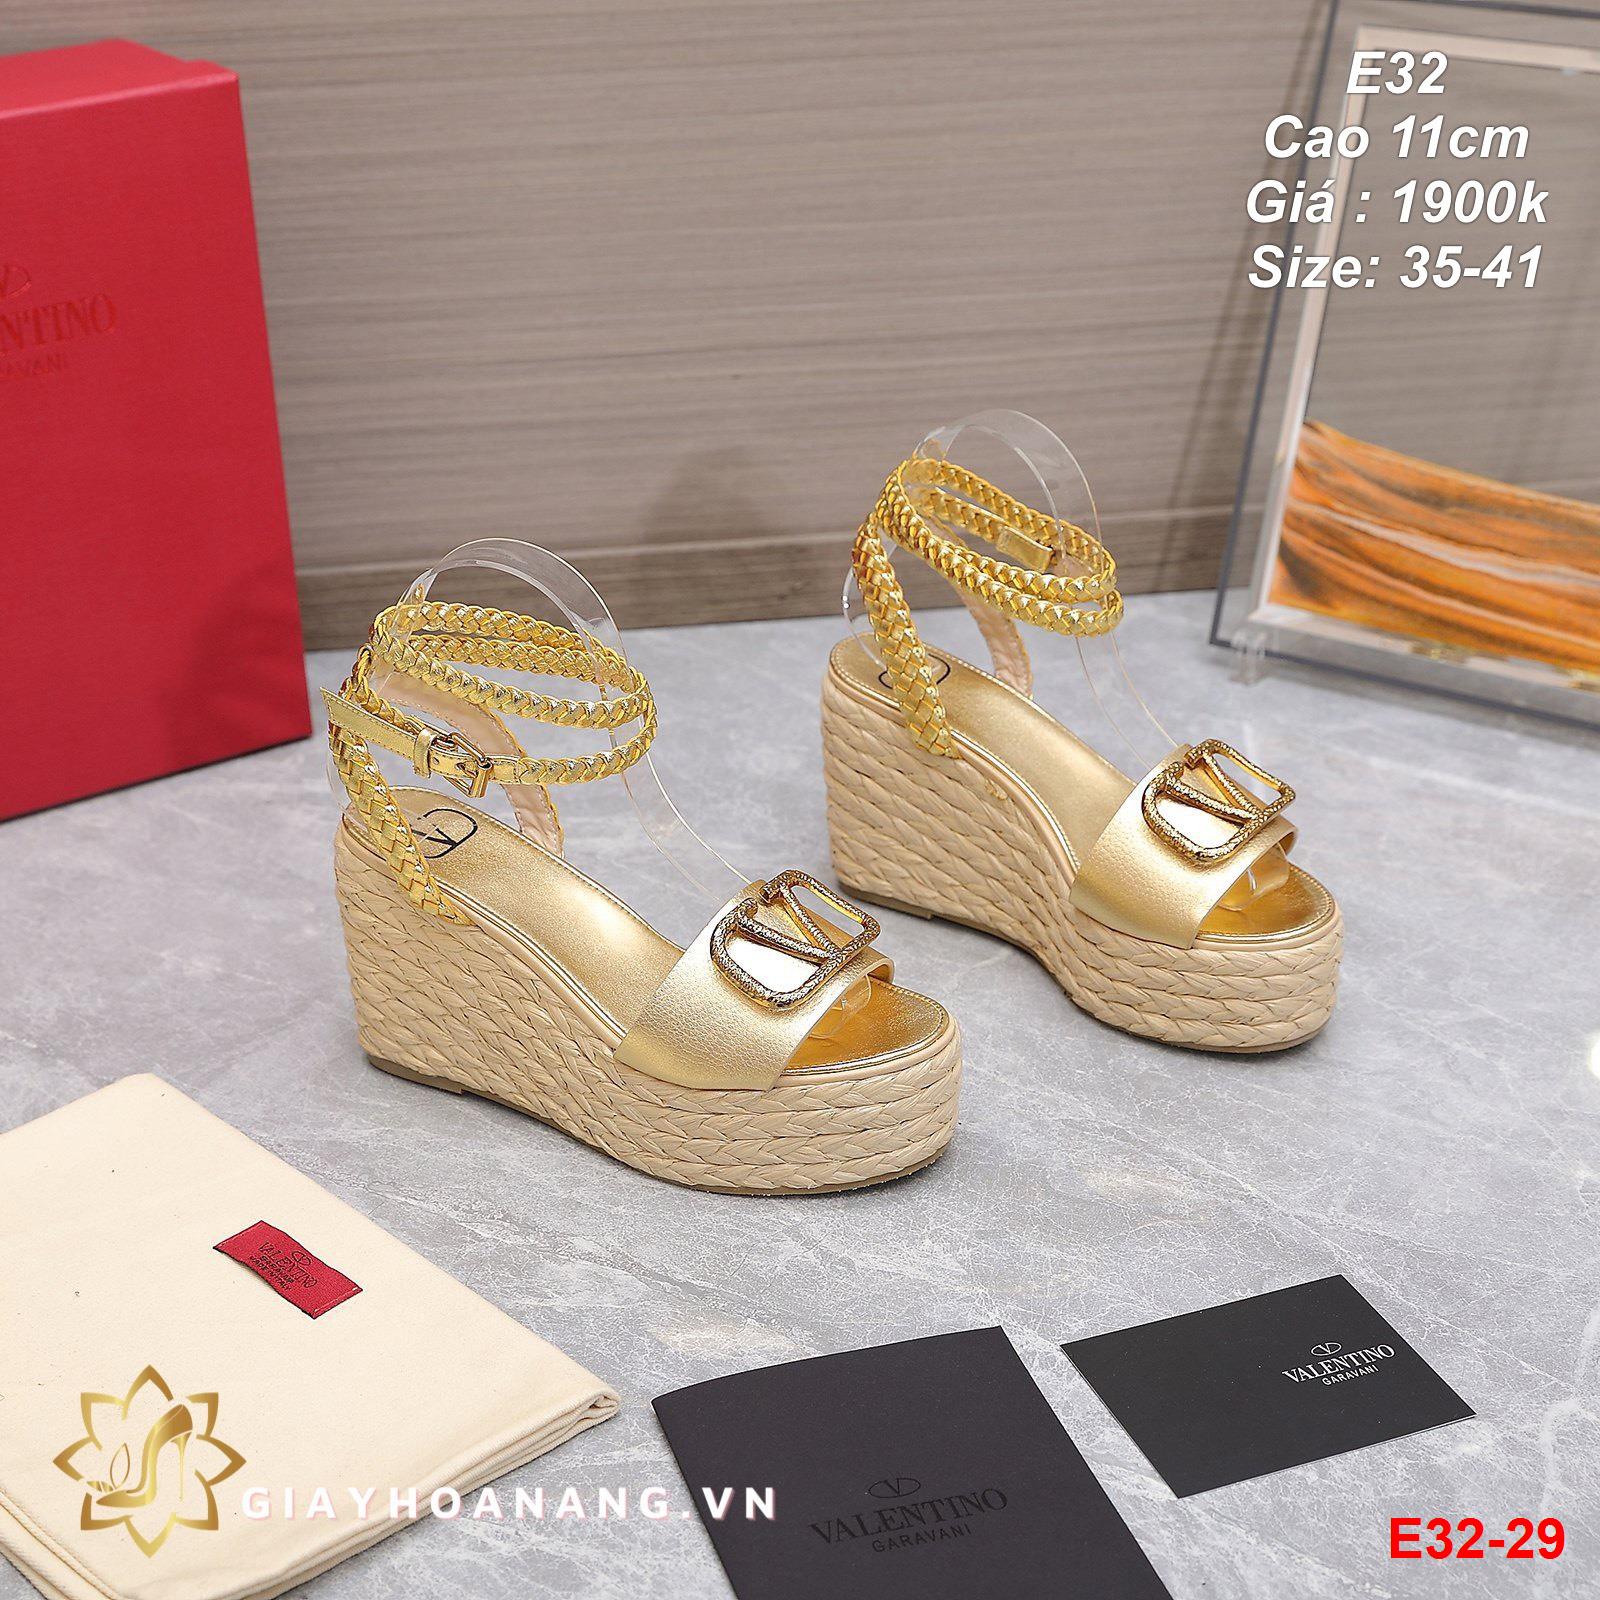 E32-29 Valentino sandal cao 11cm siêu cấp